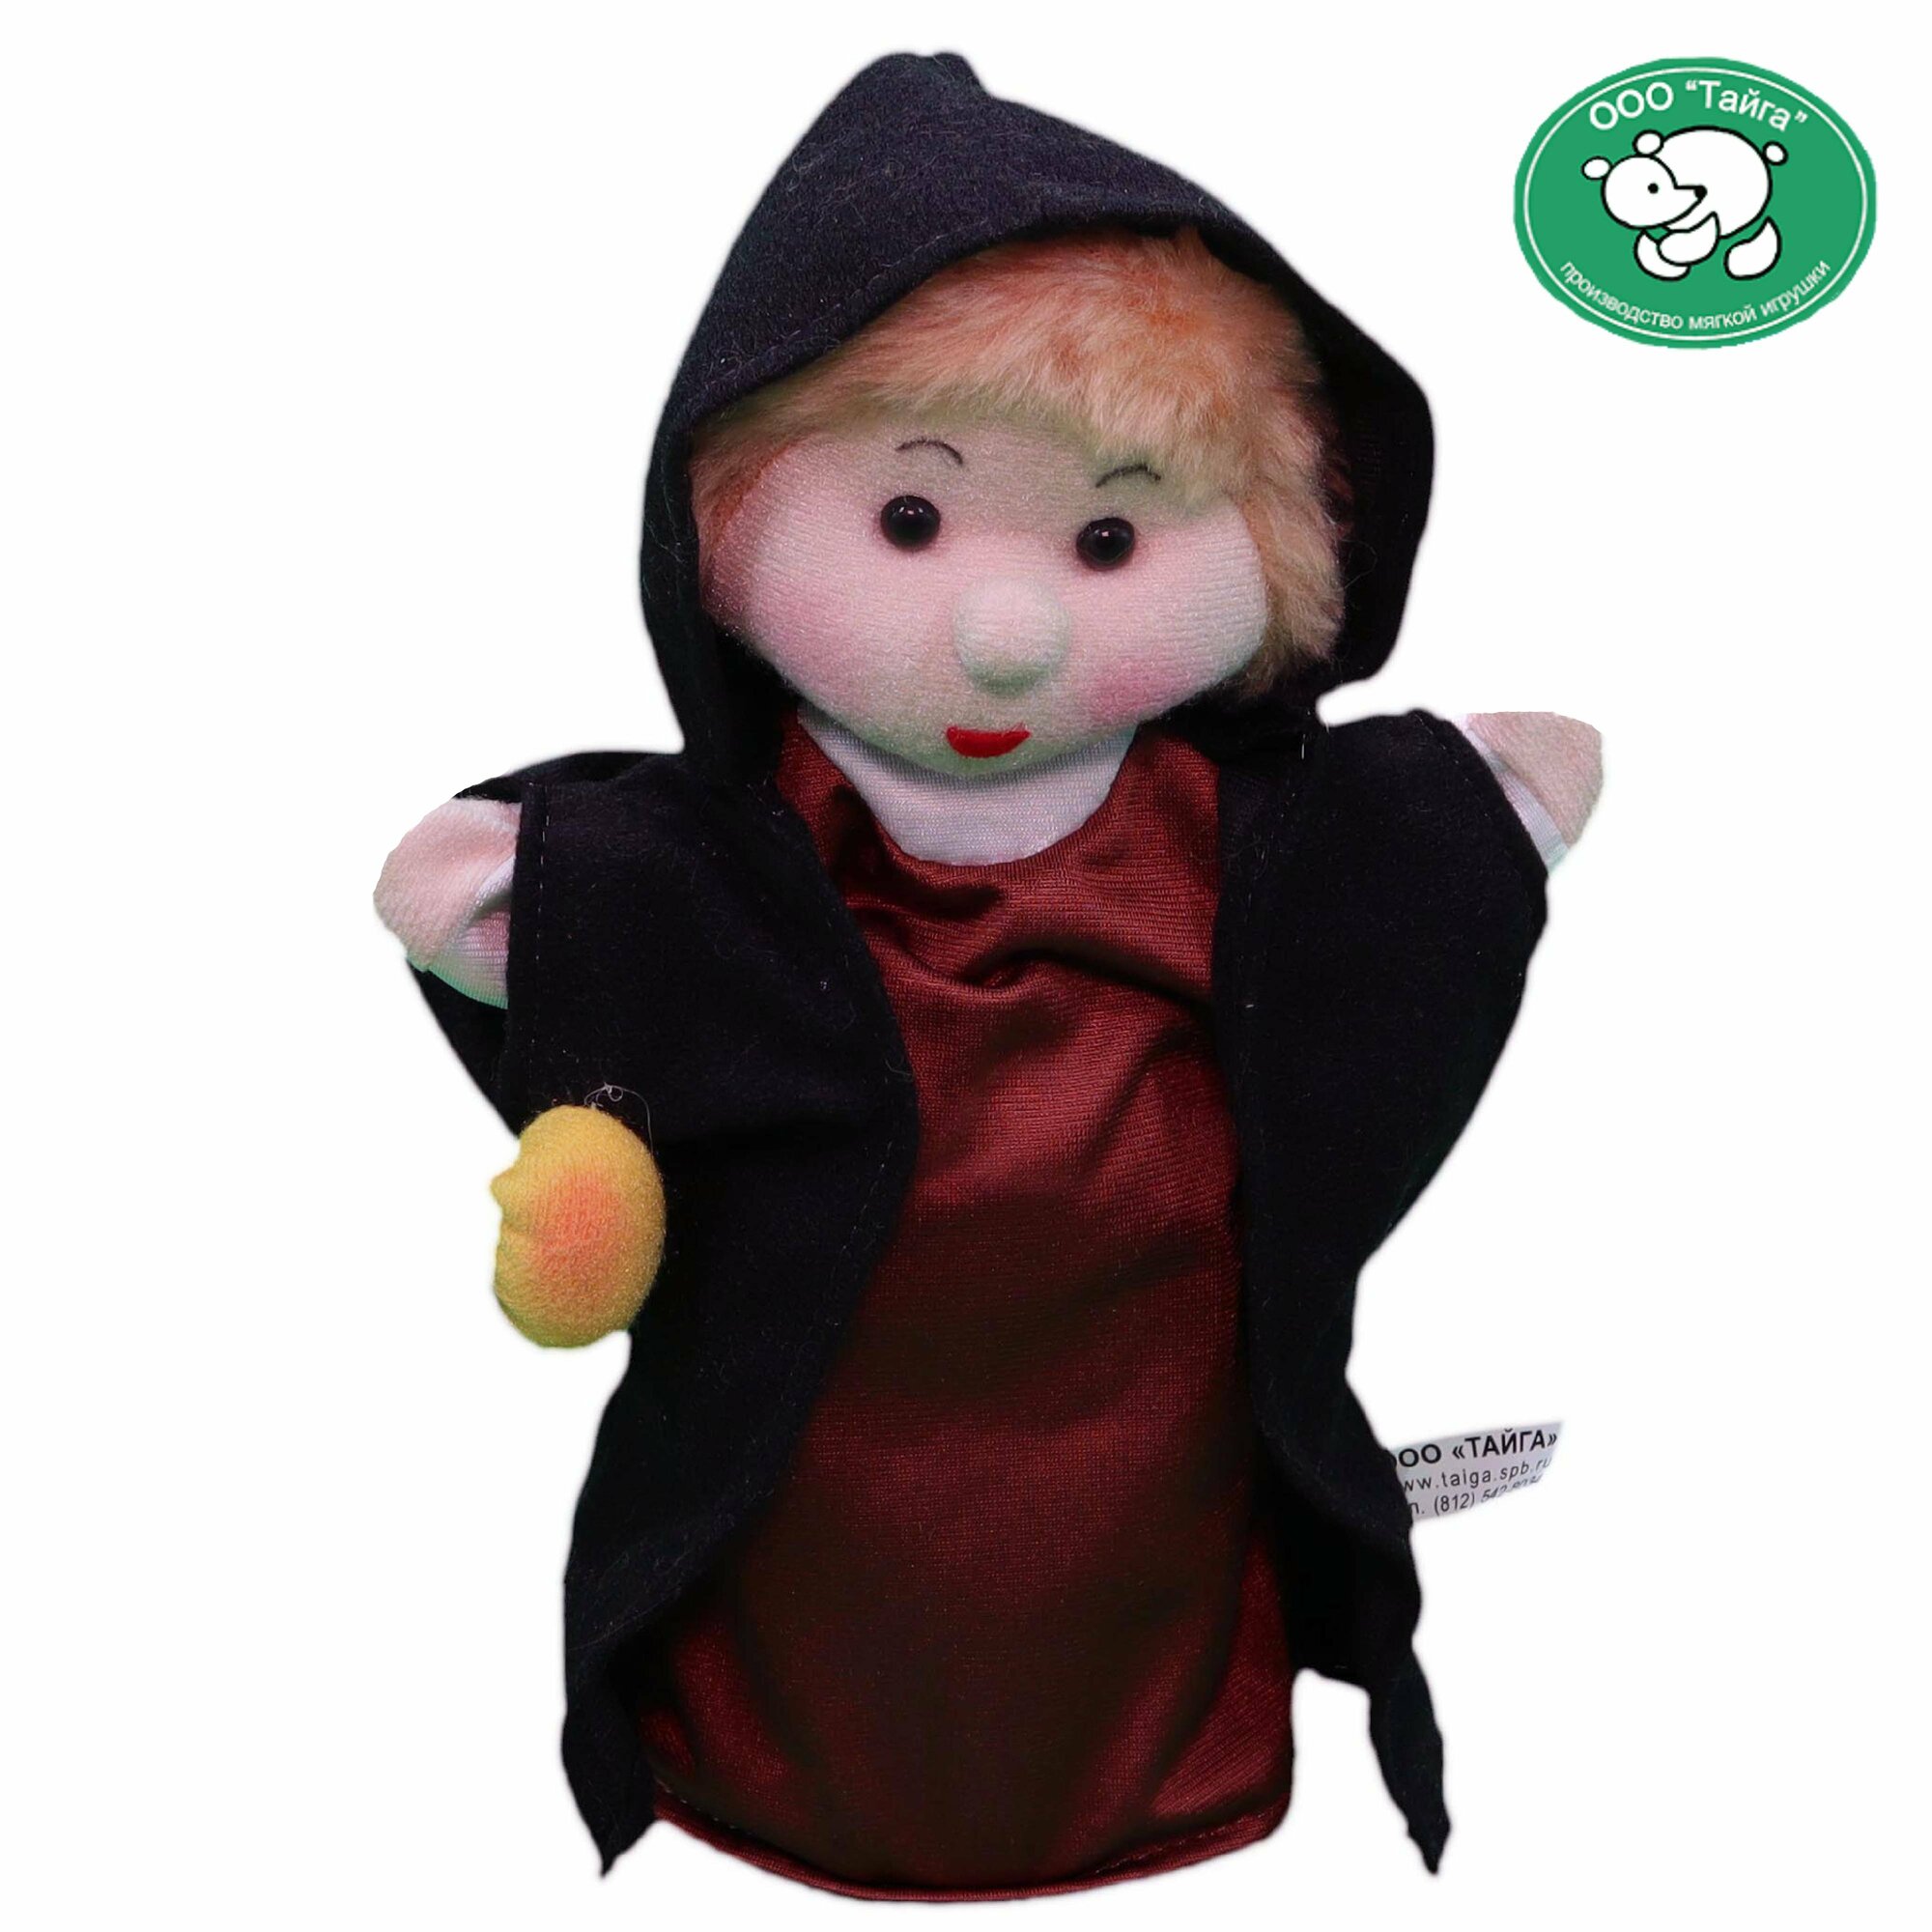 Мягкая игрушка на руку "Тайга" для детского кукольного театра "Чернавушка" (кукла-перчатка из "Сказки о мертвой царевне")